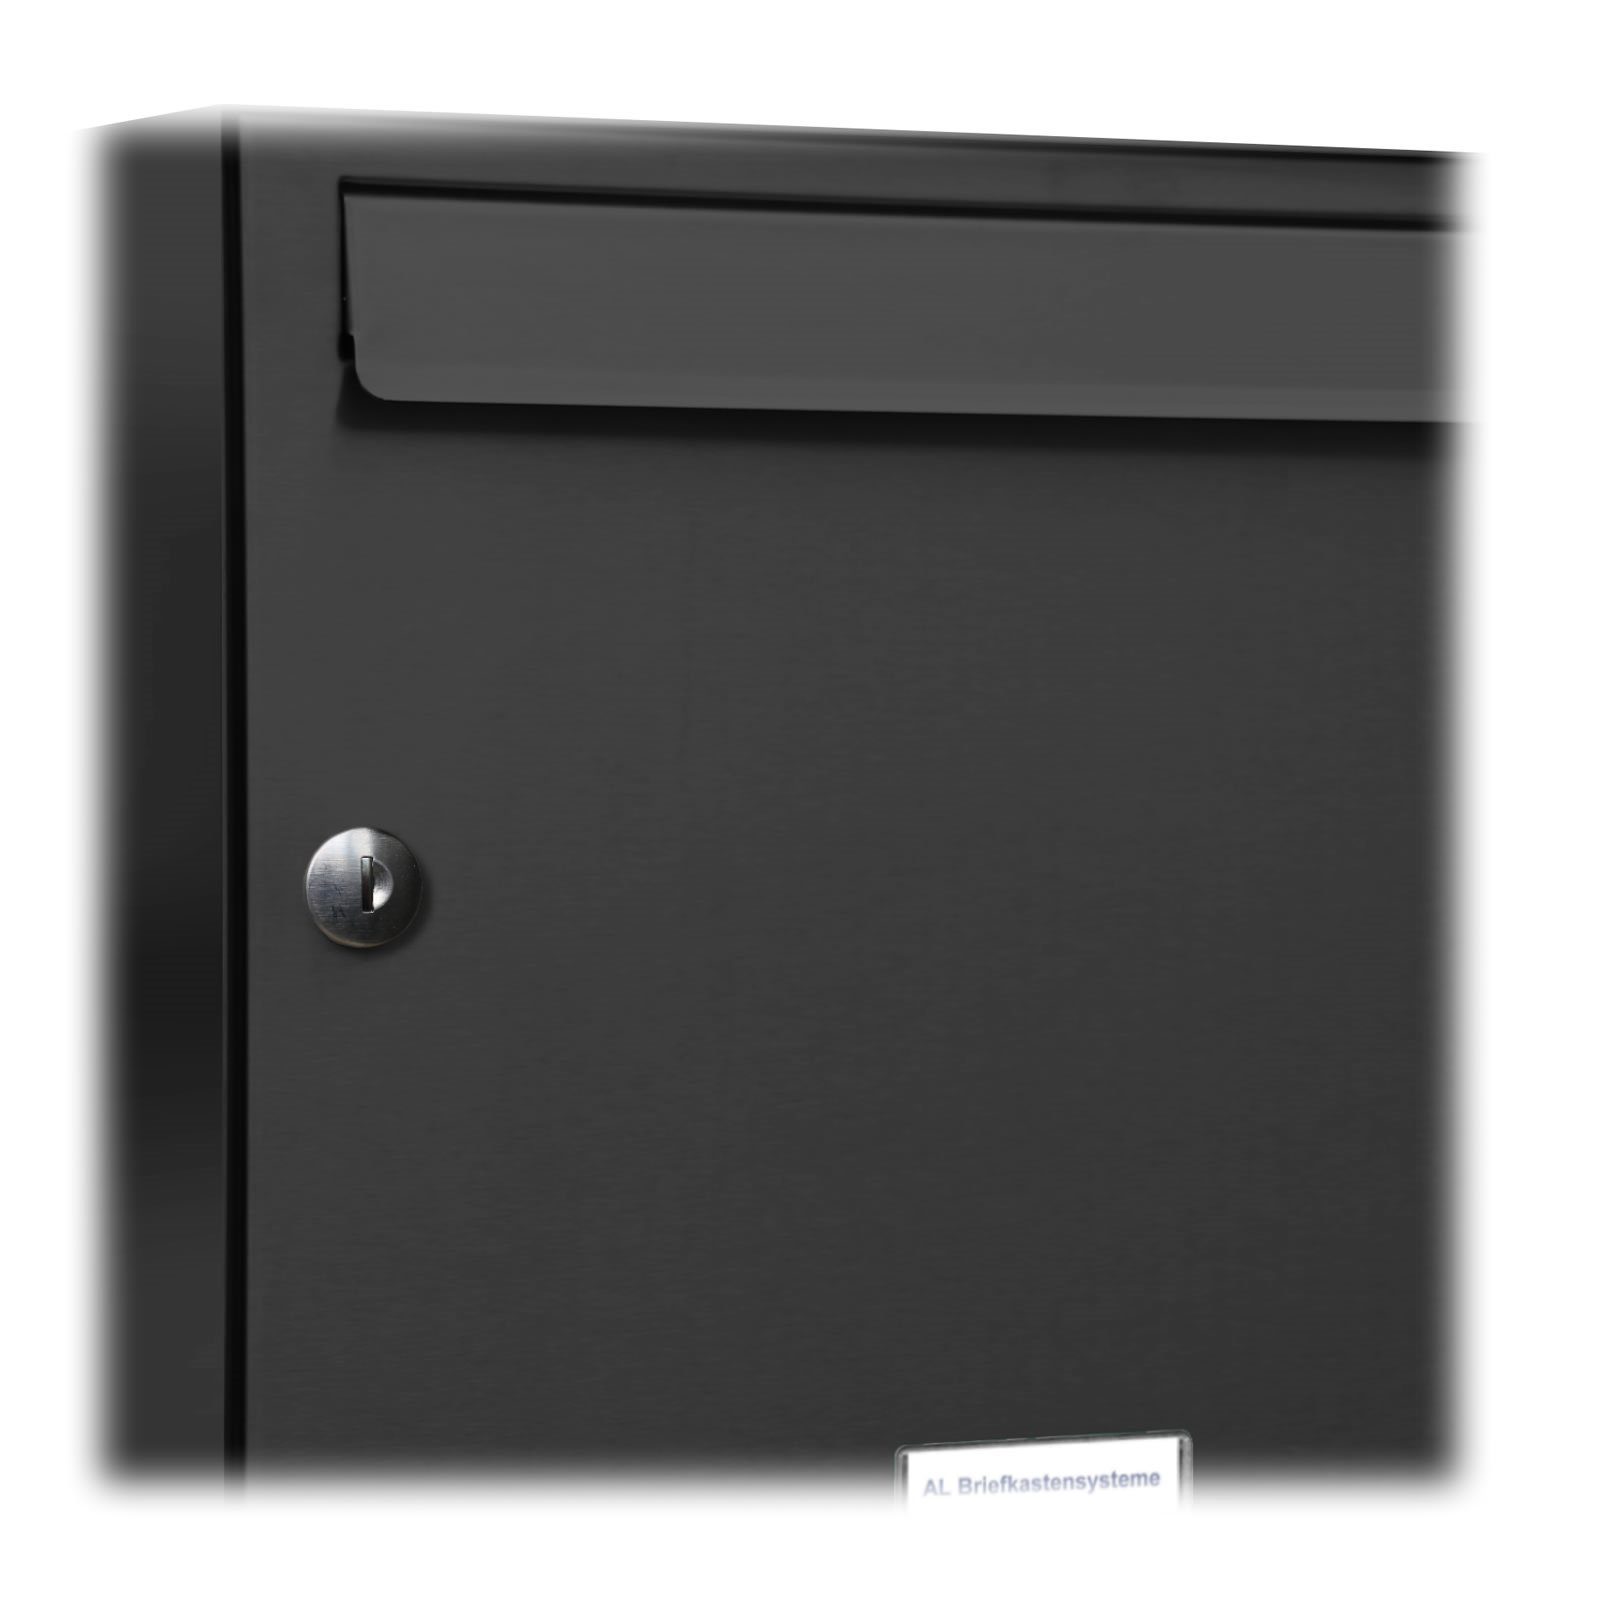 AL Briefkastensysteme Wandbriefkasten Premium 4x4S Anthrazit Farbe 16er für Außen RAL 7016 Wand Briefkasten